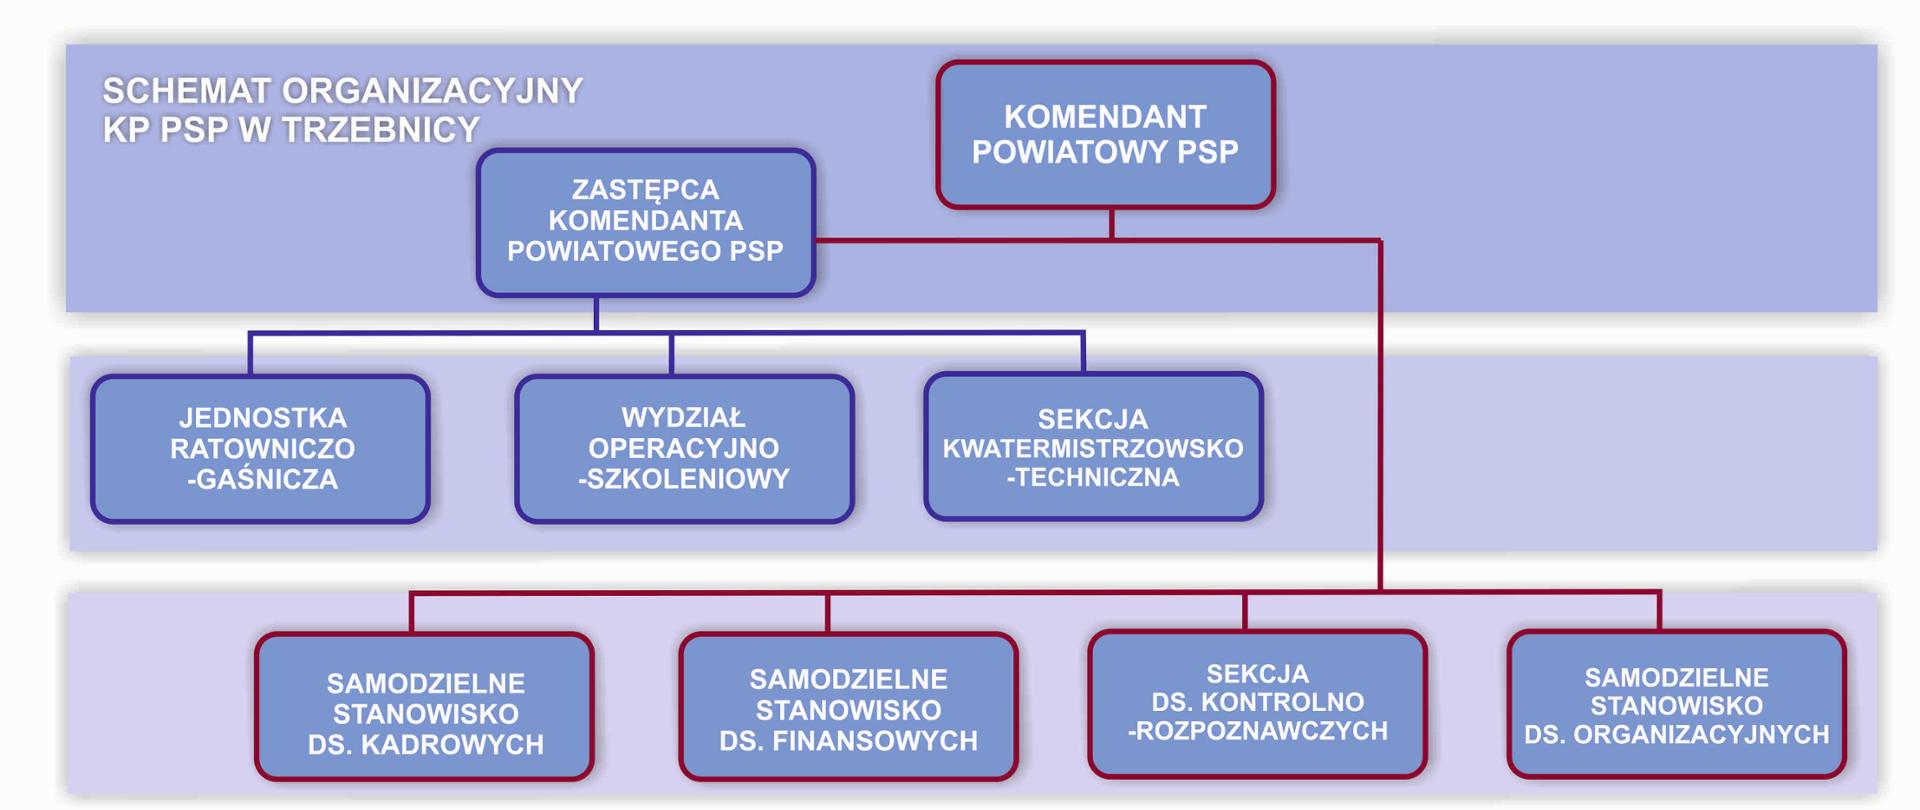 Schemat organizacyjny opisujący poszczególne komórki organizacyjny i ich miejsce w organizacji